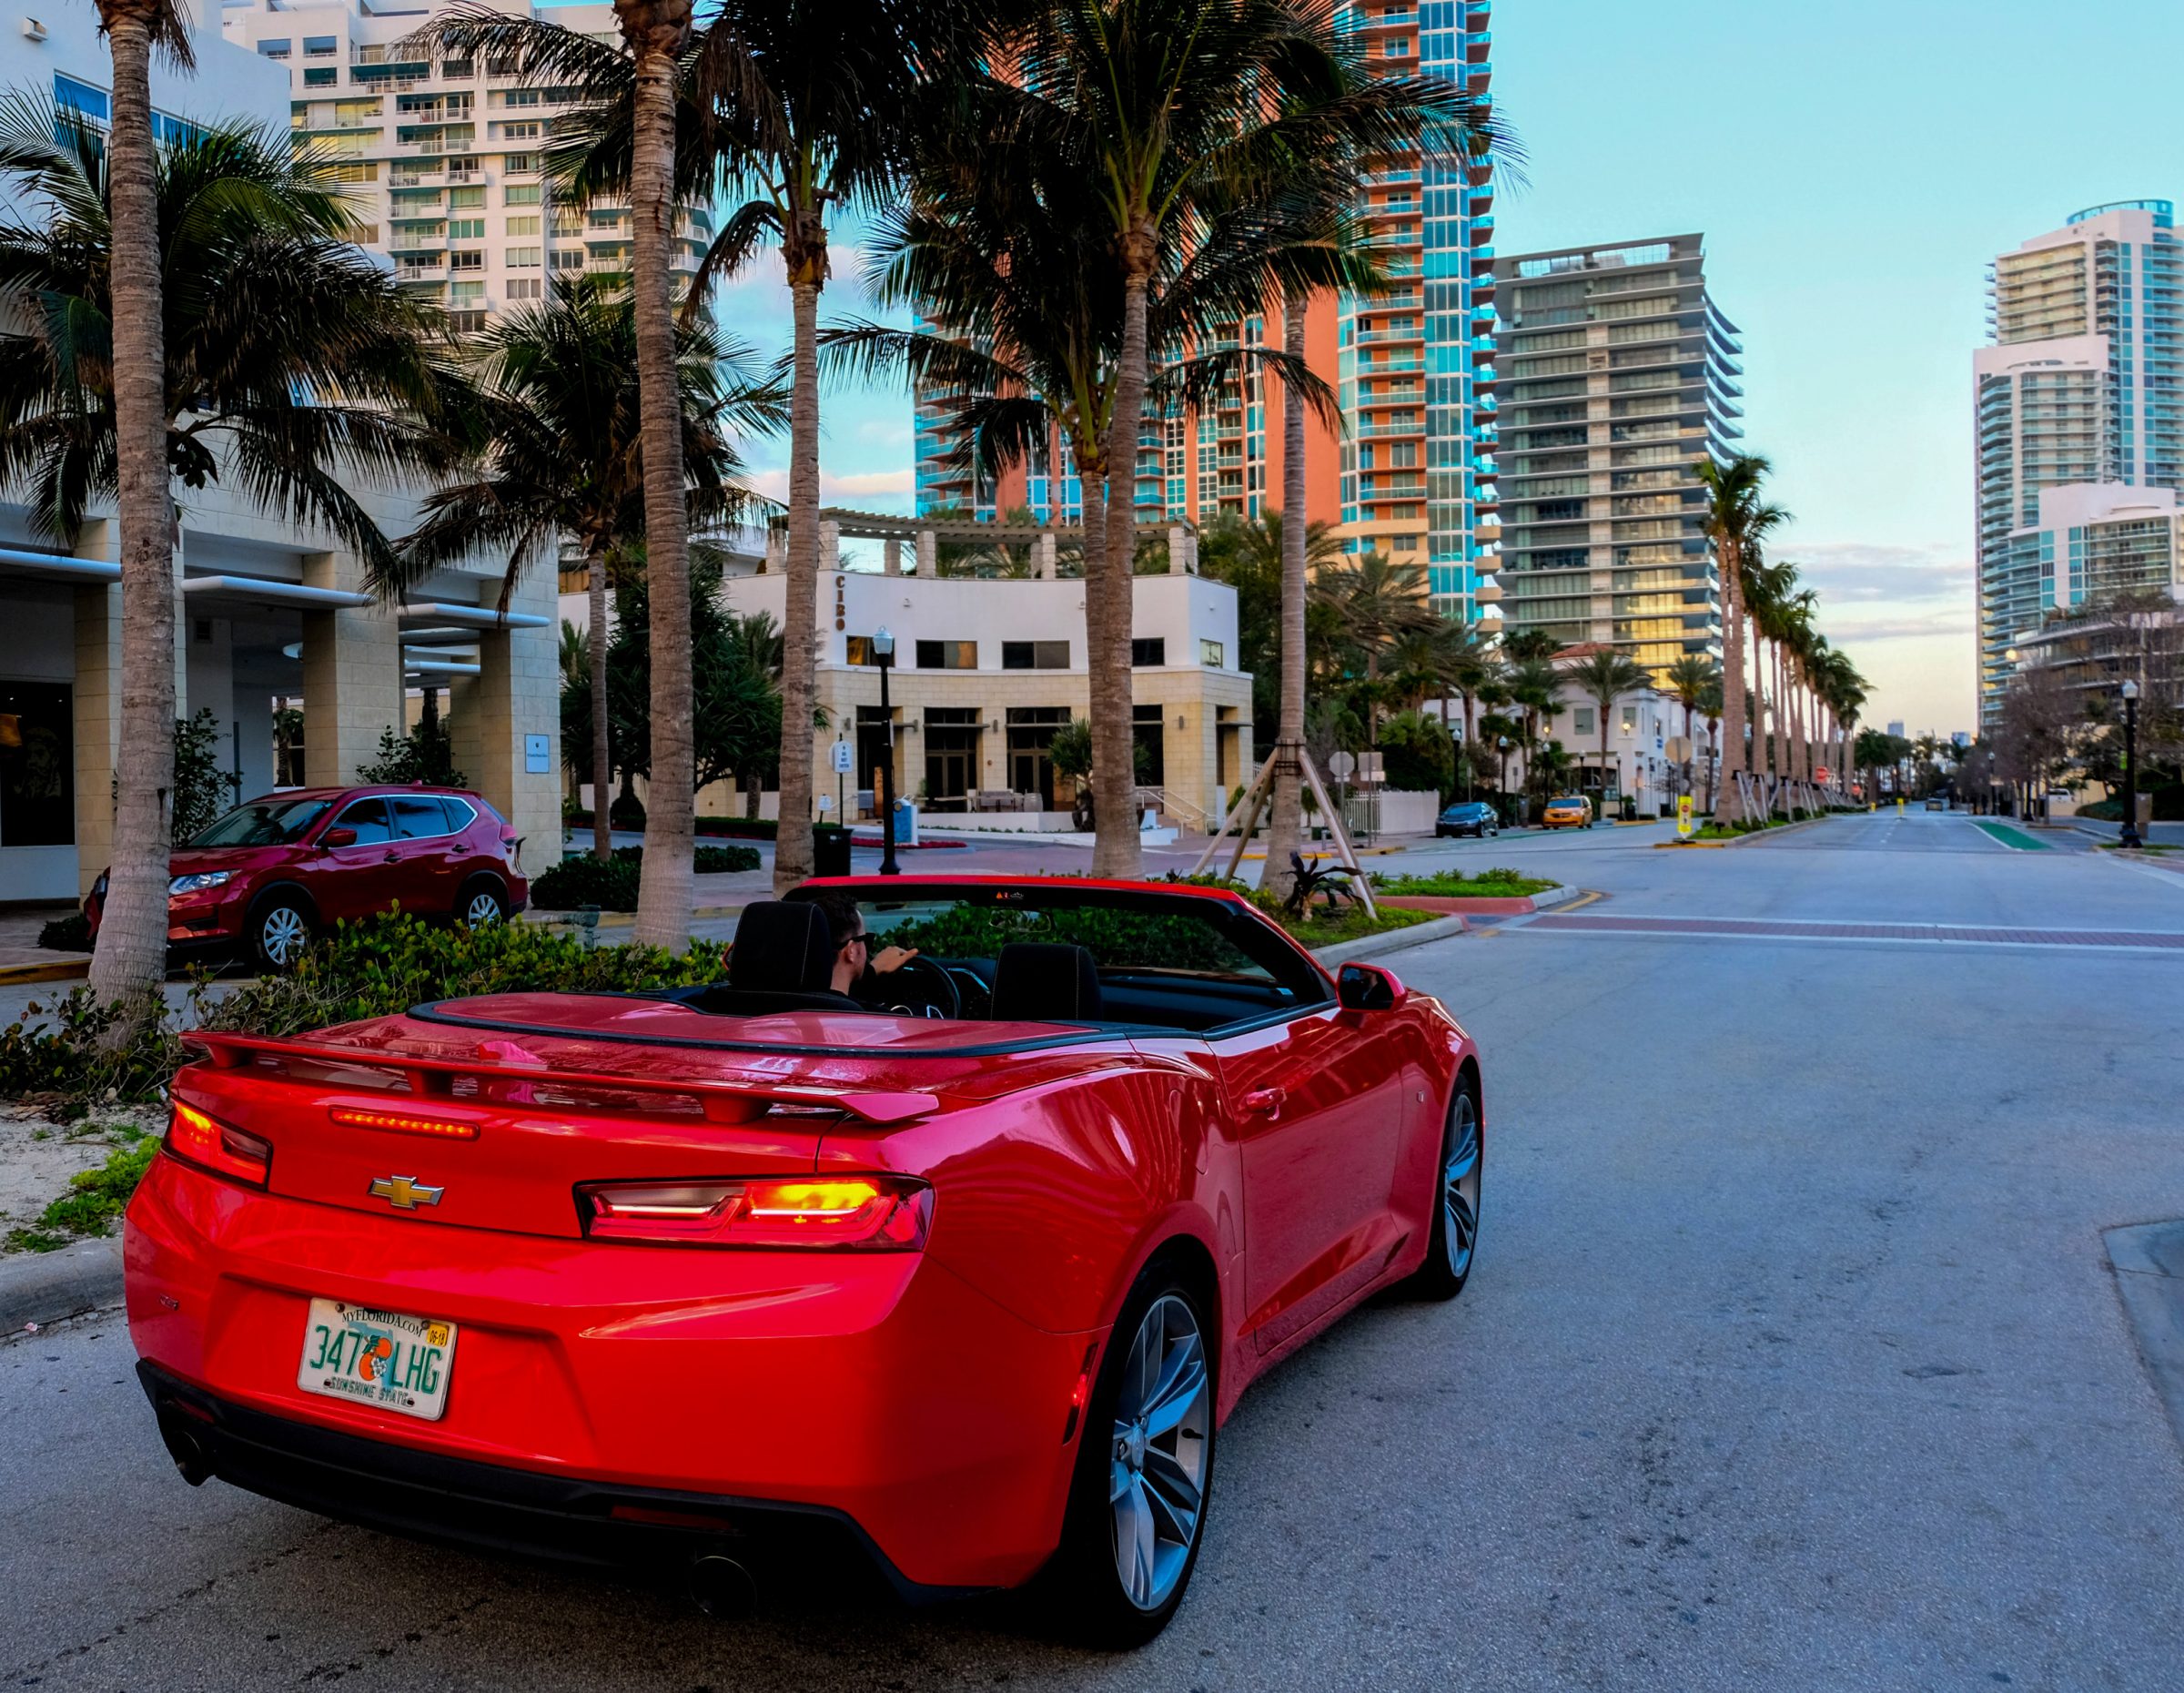 Noleggia un'auto fantastica a Miami! | Mette in risalto roadtrip New York-Key West